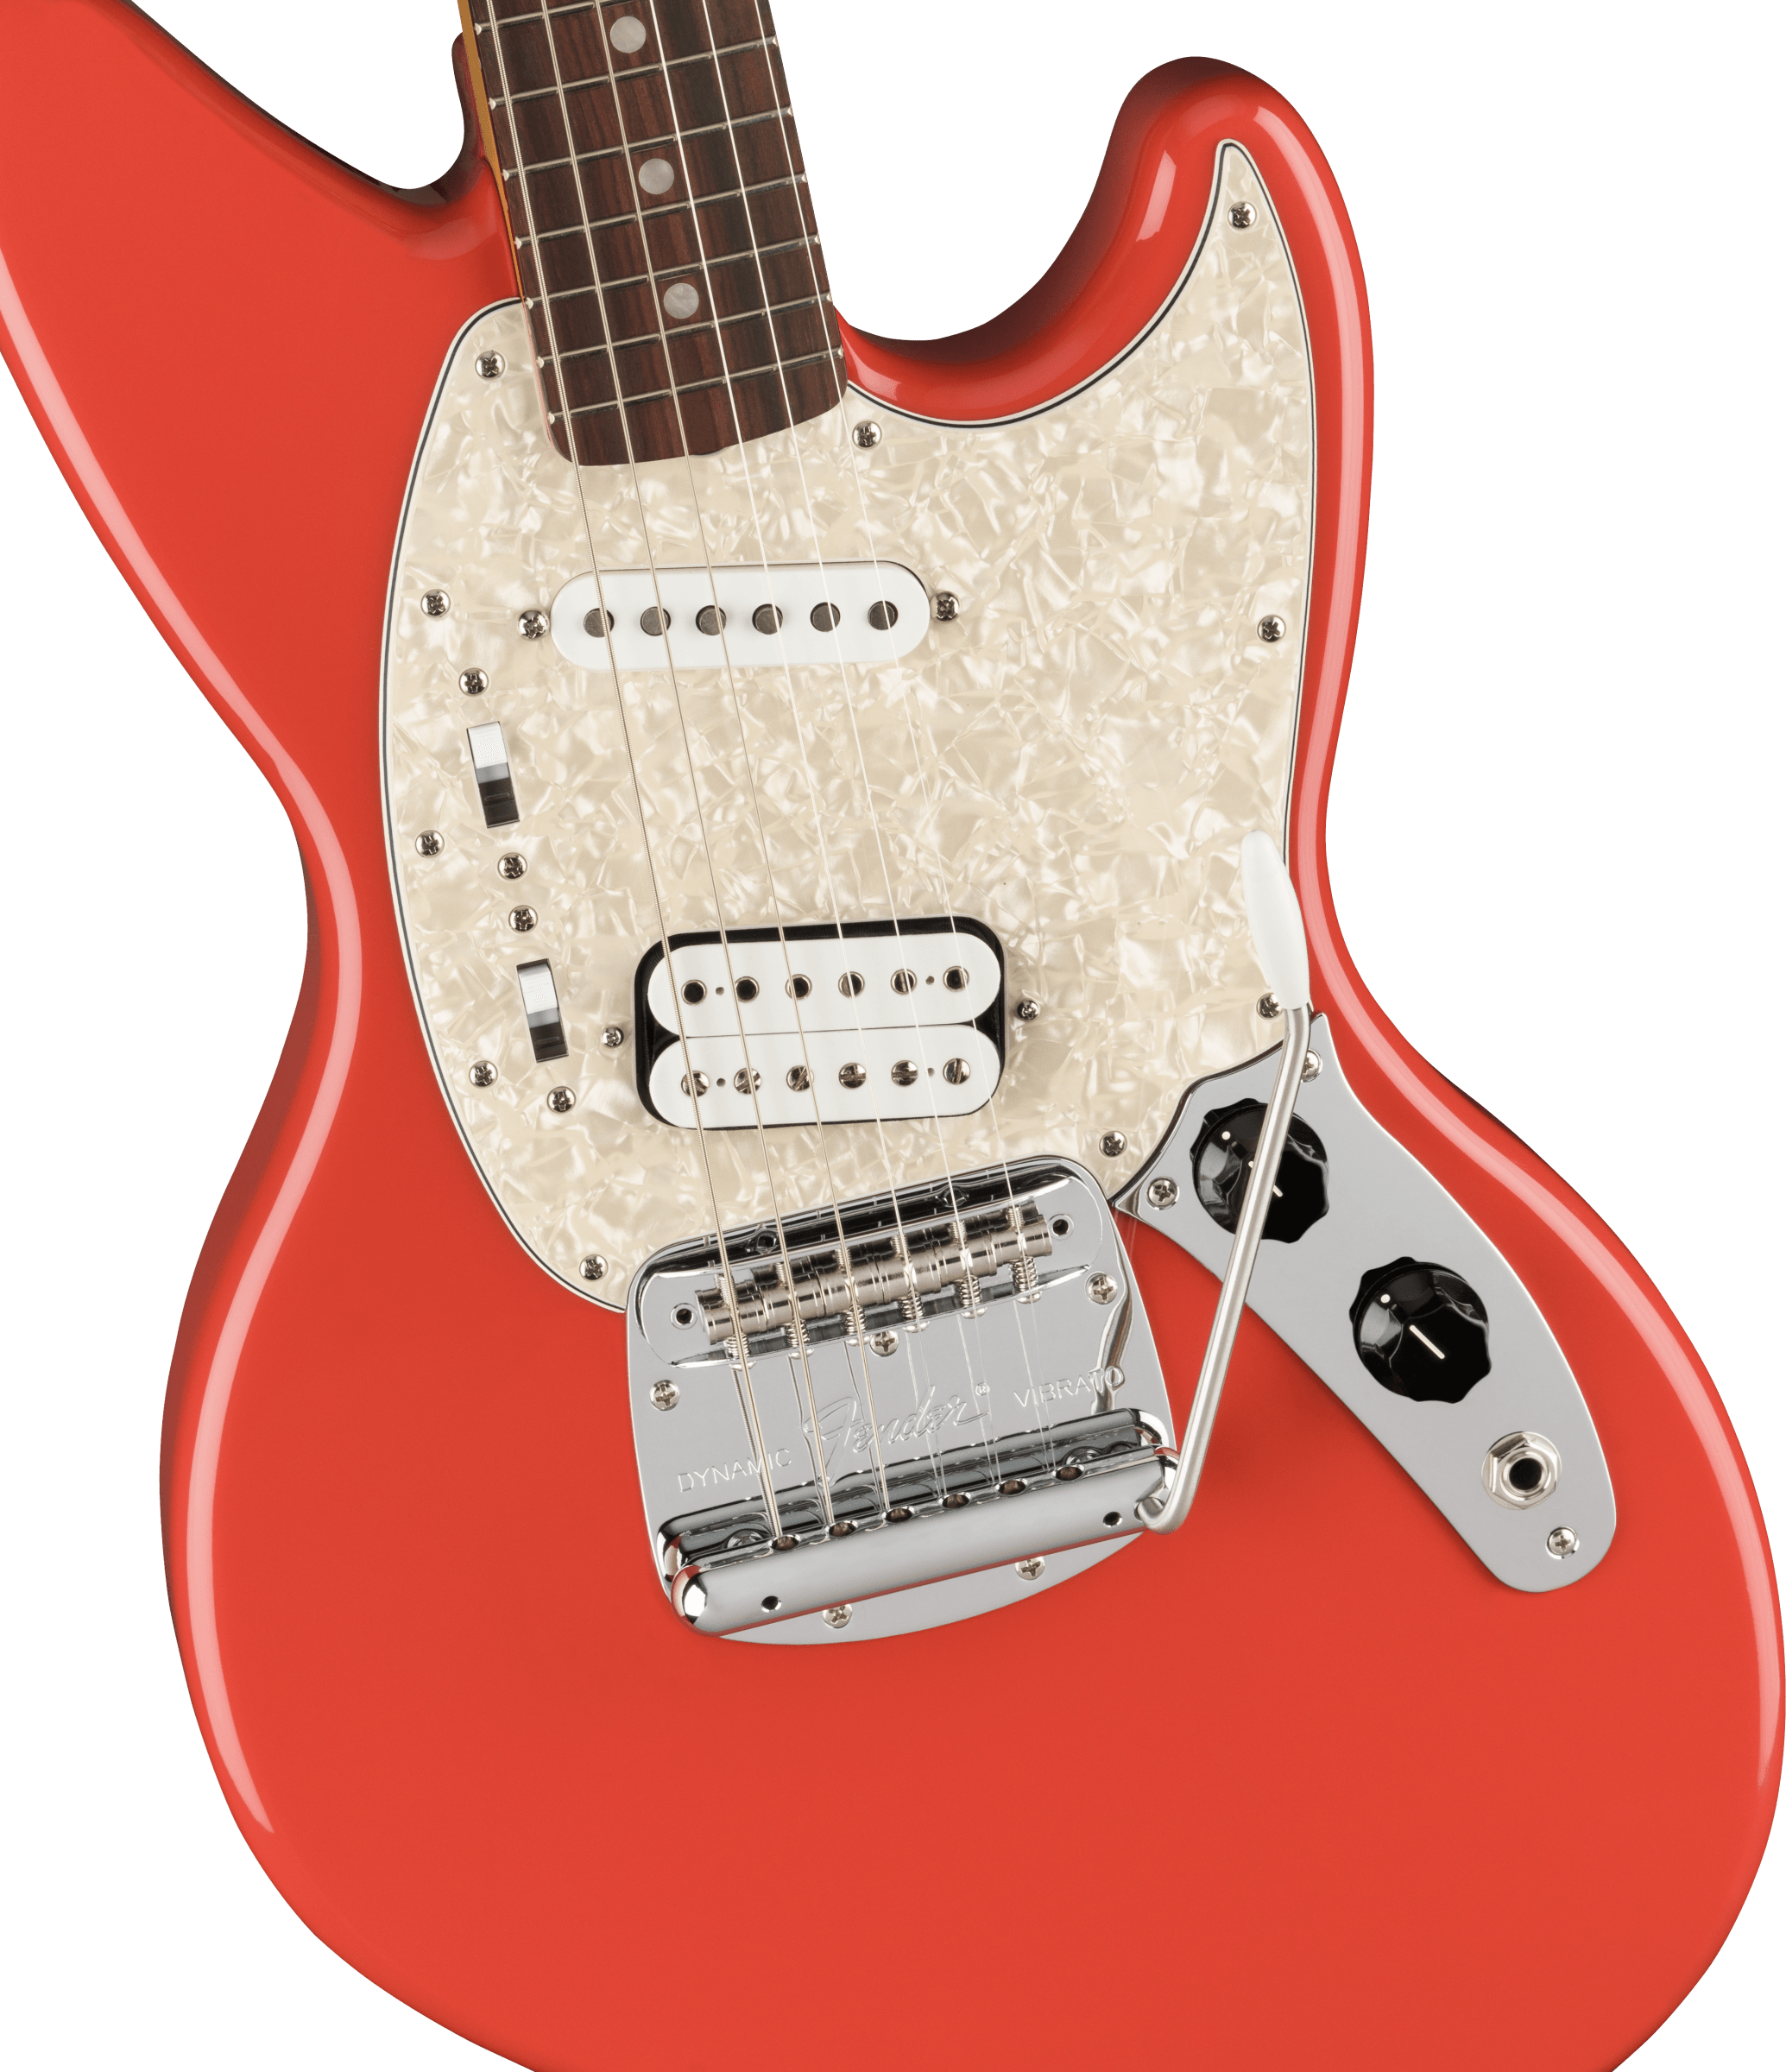 Fender Jag-stang Kurt Cobain Artist Hs Trem Rw - Fiesta Red - Guitare Électrique RÉtro Rock - Variation 2